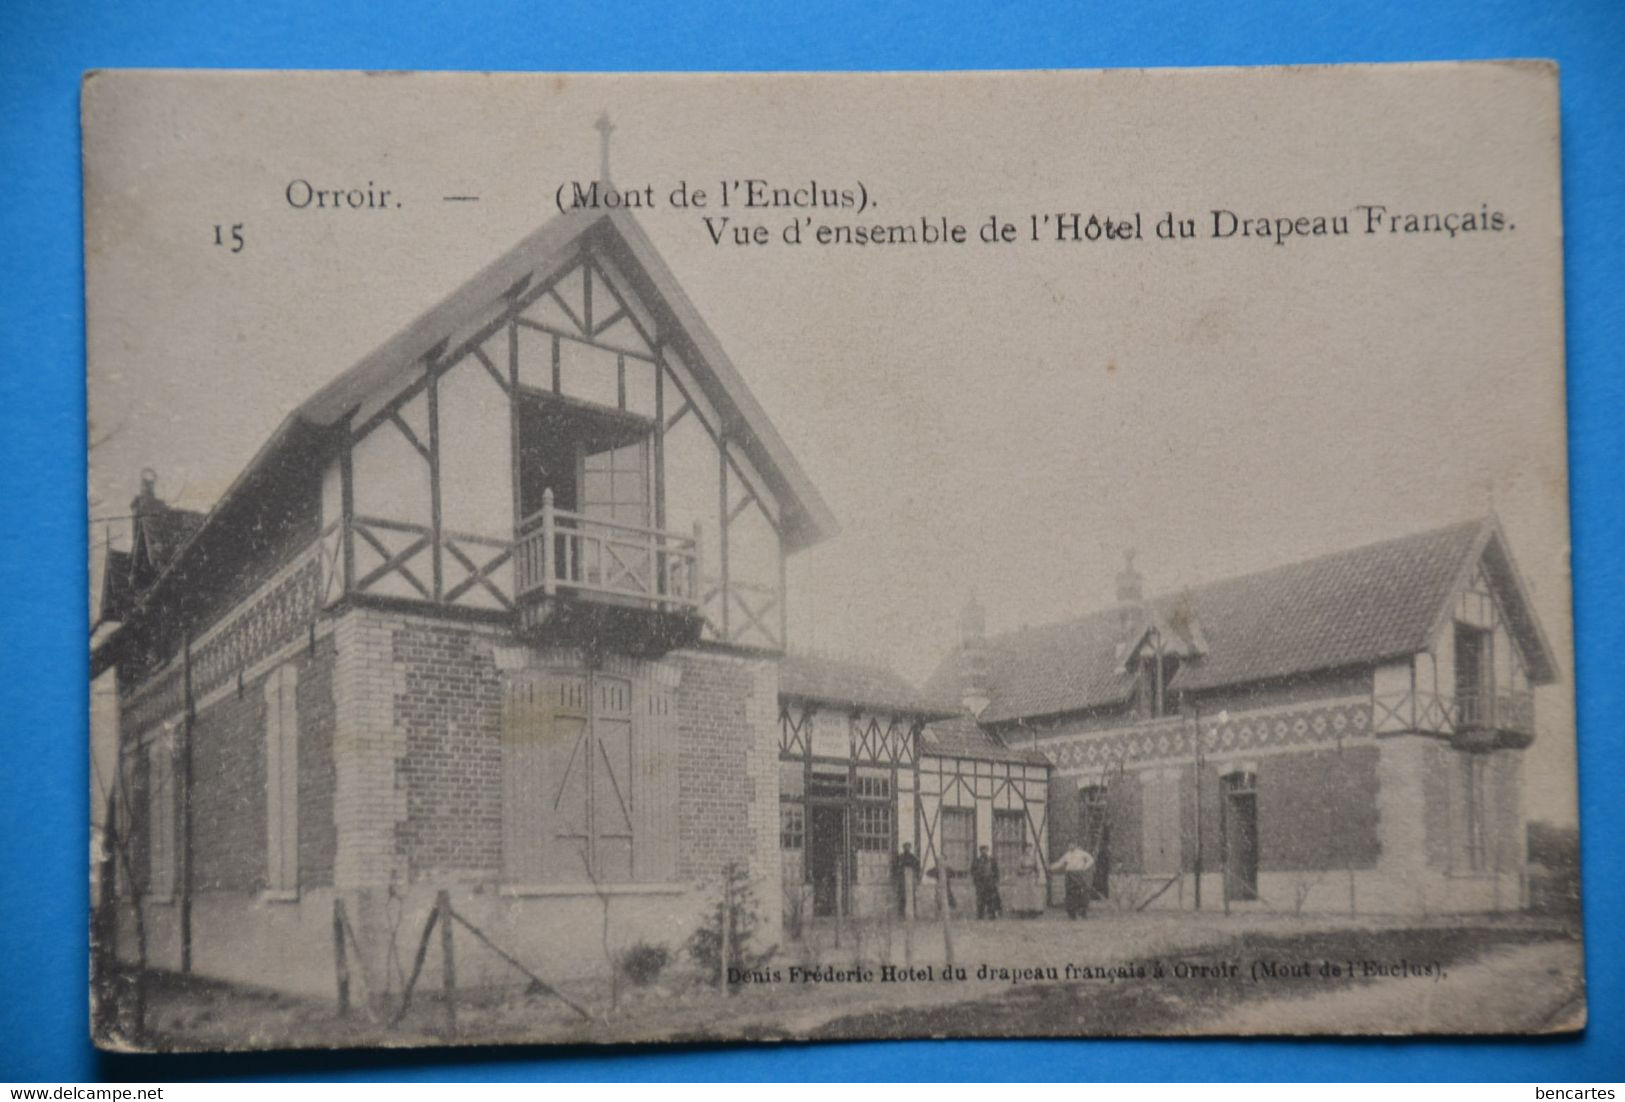 Orroir 1930: Mont De L'Enclus, Vue De L'ensemble Dce L'Hôtel Du Drapeau Français - Kluisbergen